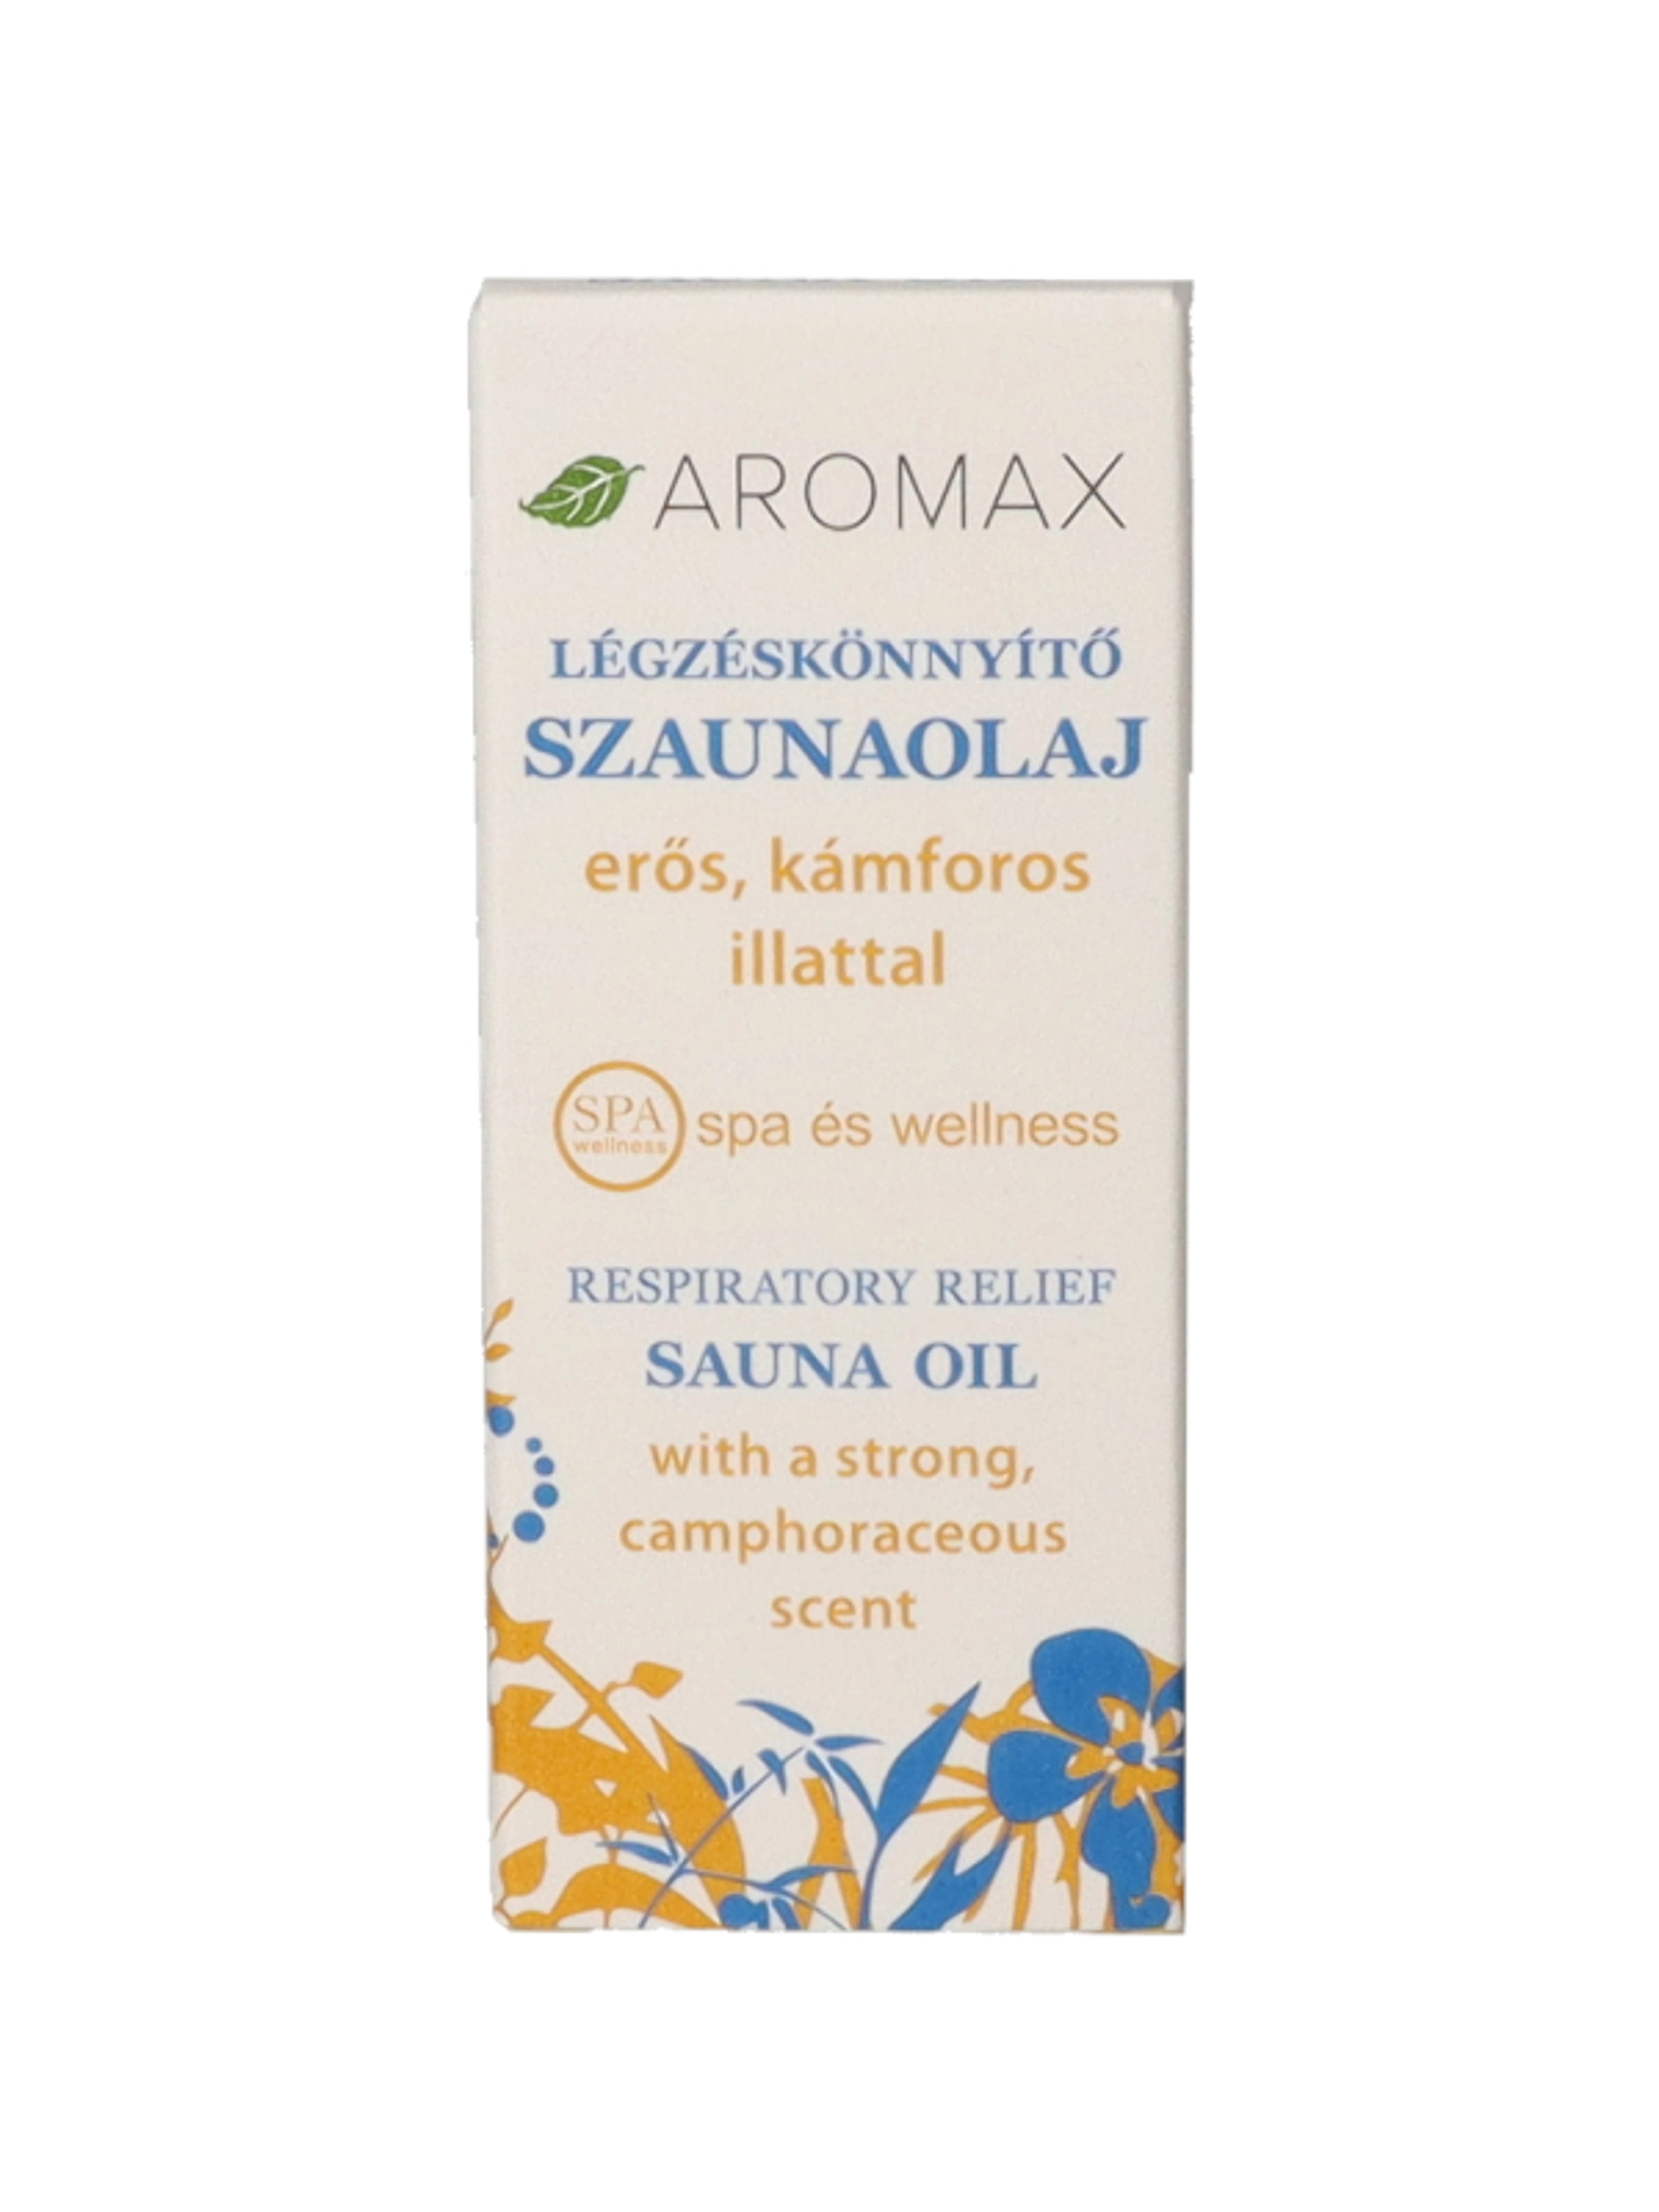 Aromax légzéskönnyítő szaunaolaj - 10 ml